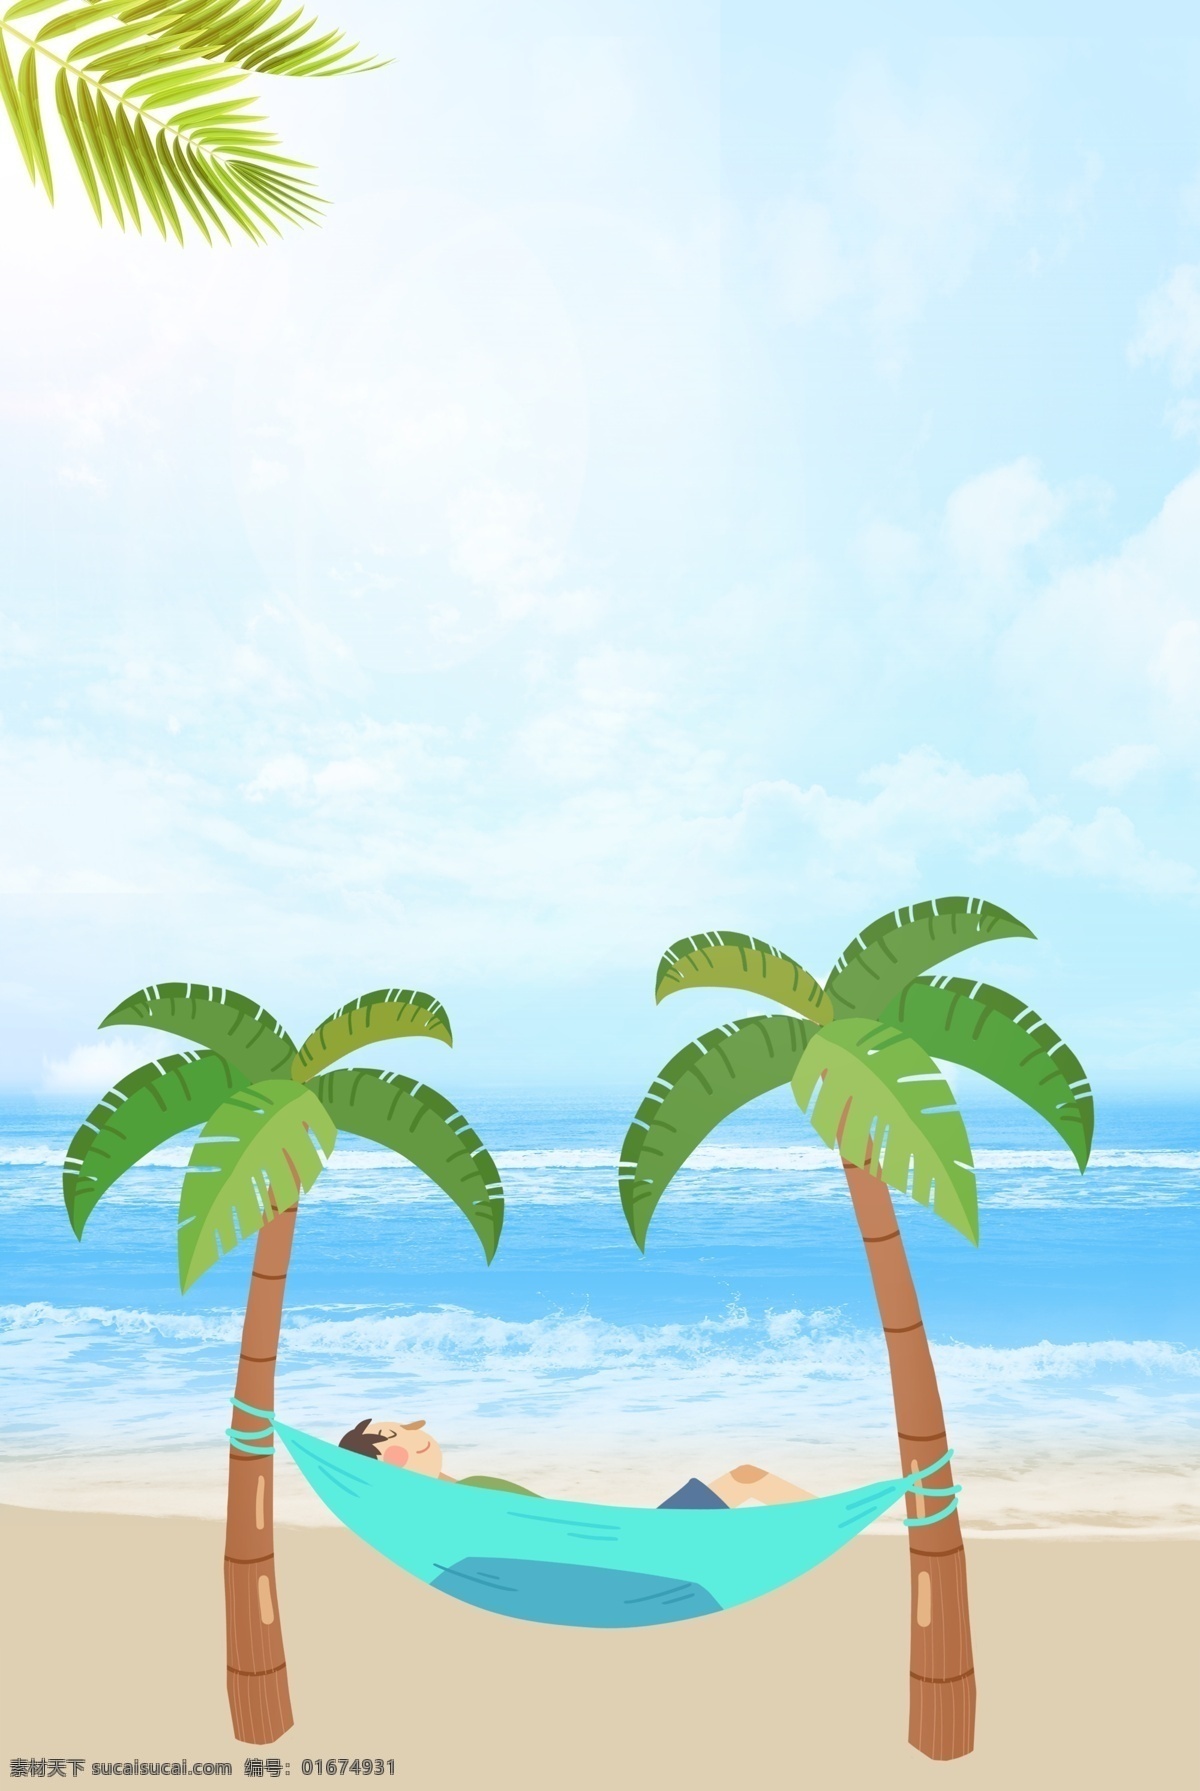 沙滩 吊床 度假 背景 海报 海滩 睡觉 椰树 浪花 晒太阳